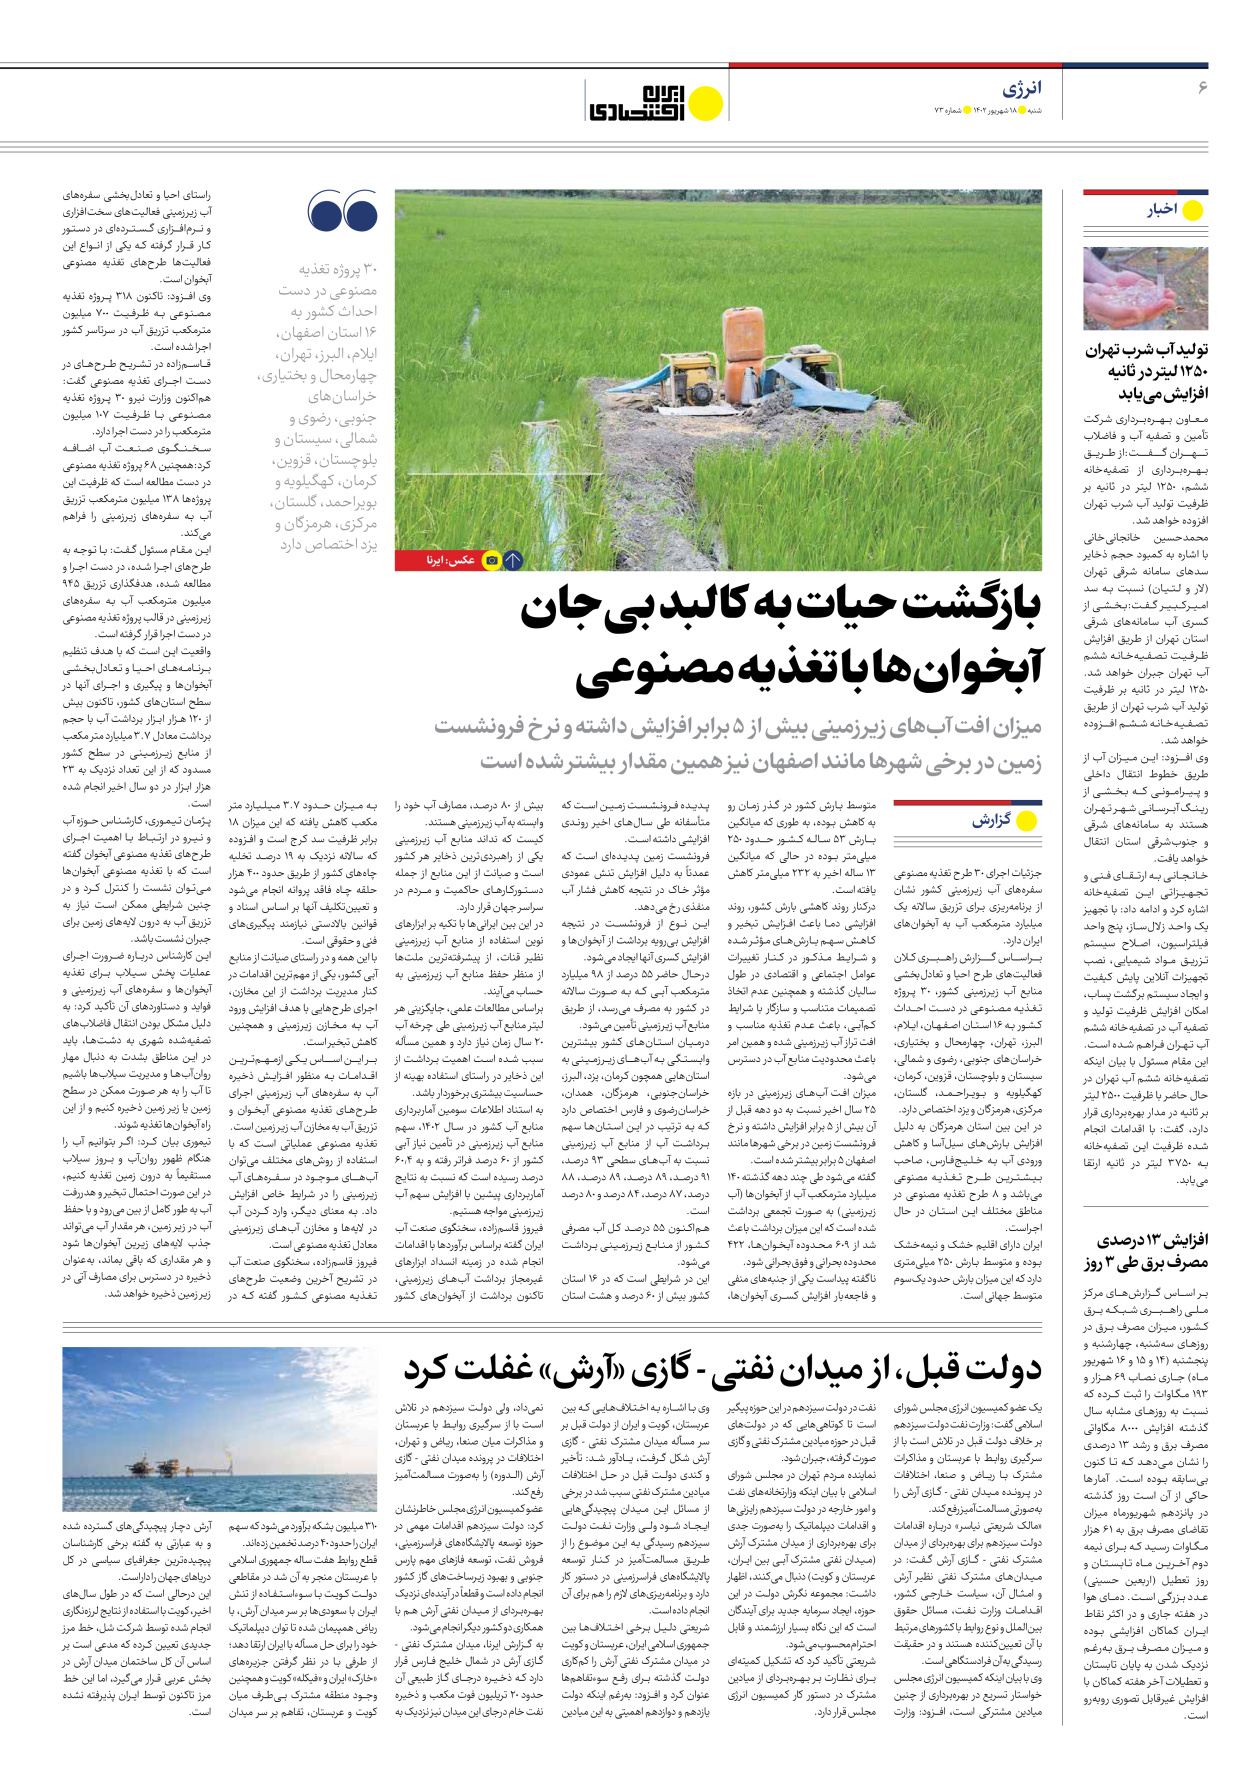 روزنامه ایران اقتصادی - شماره هفتاد و سه - ۱۸ شهریور ۱۴۰۲ - صفحه ۶